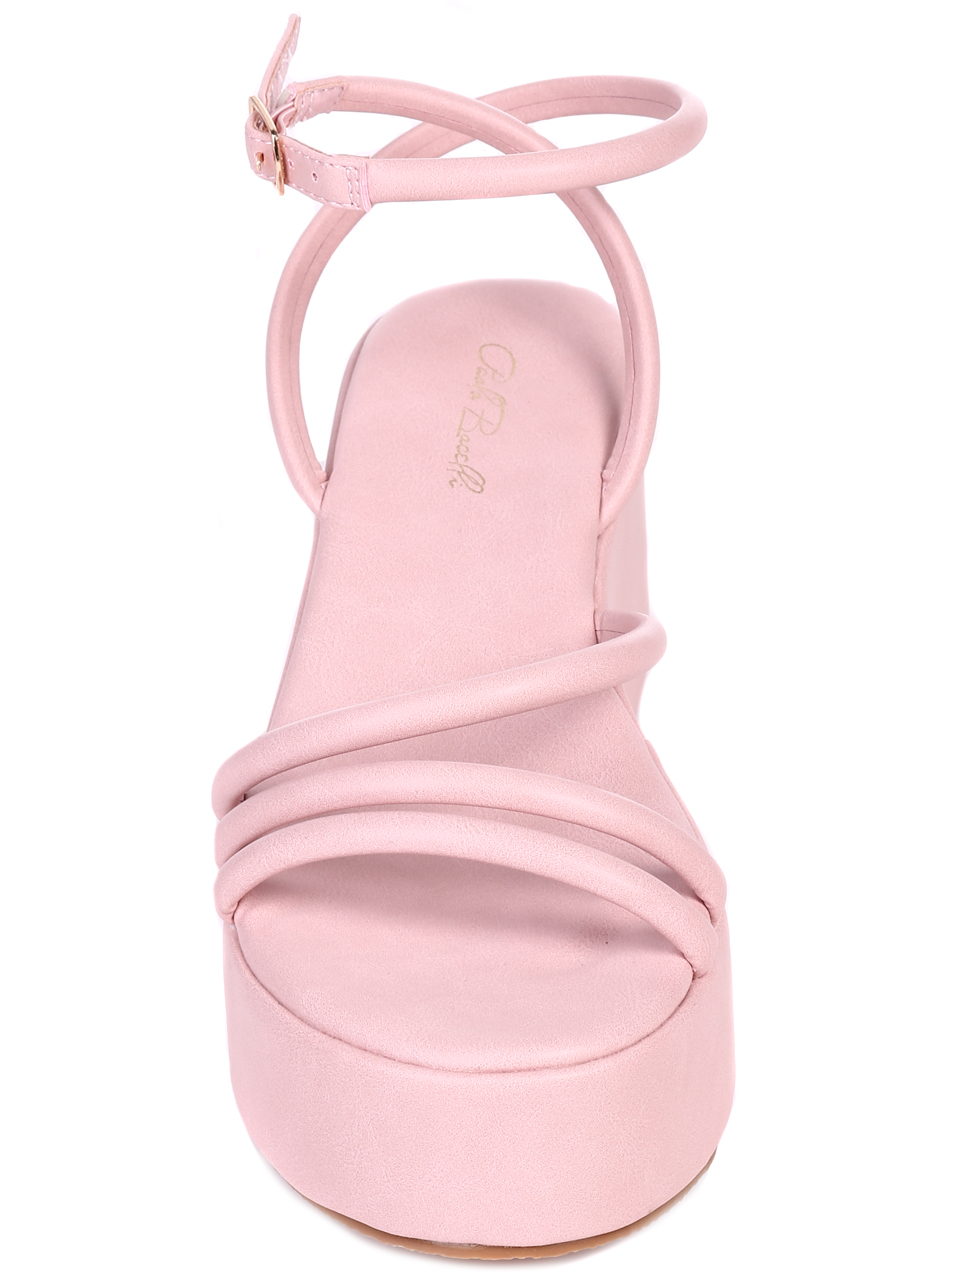 Ежедневни дамски сандали на платформа в розово 4M-22261 pink